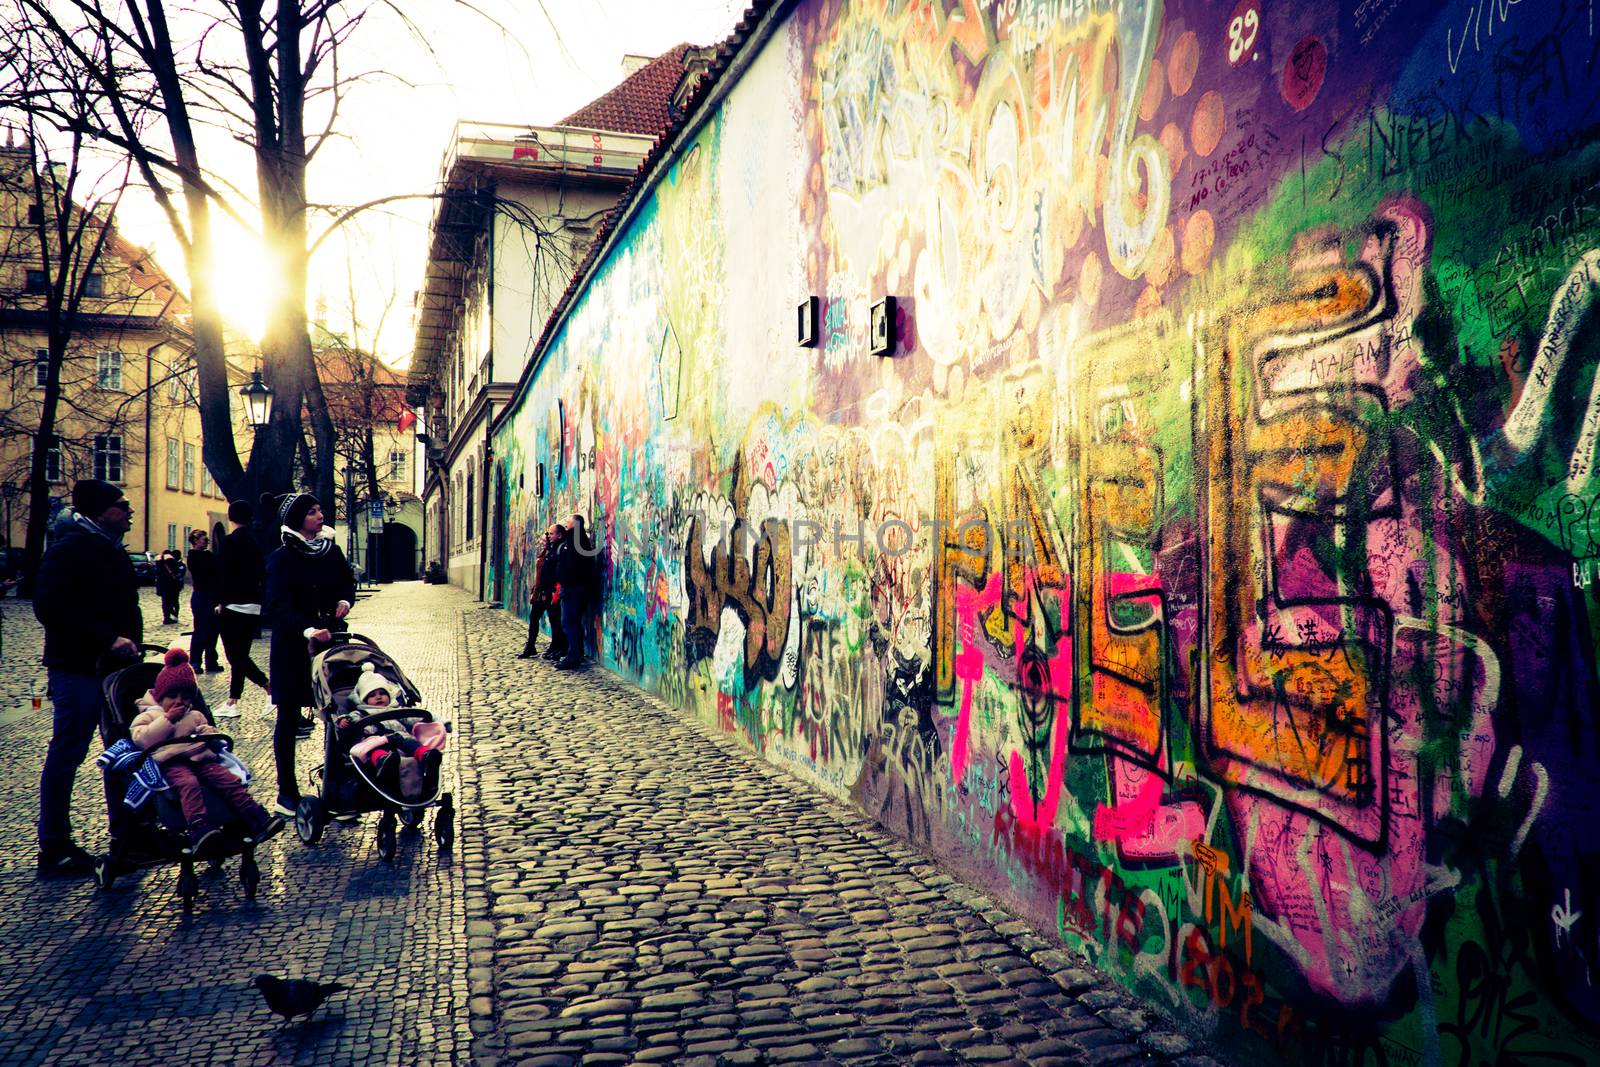 John Lennon wall - Prague